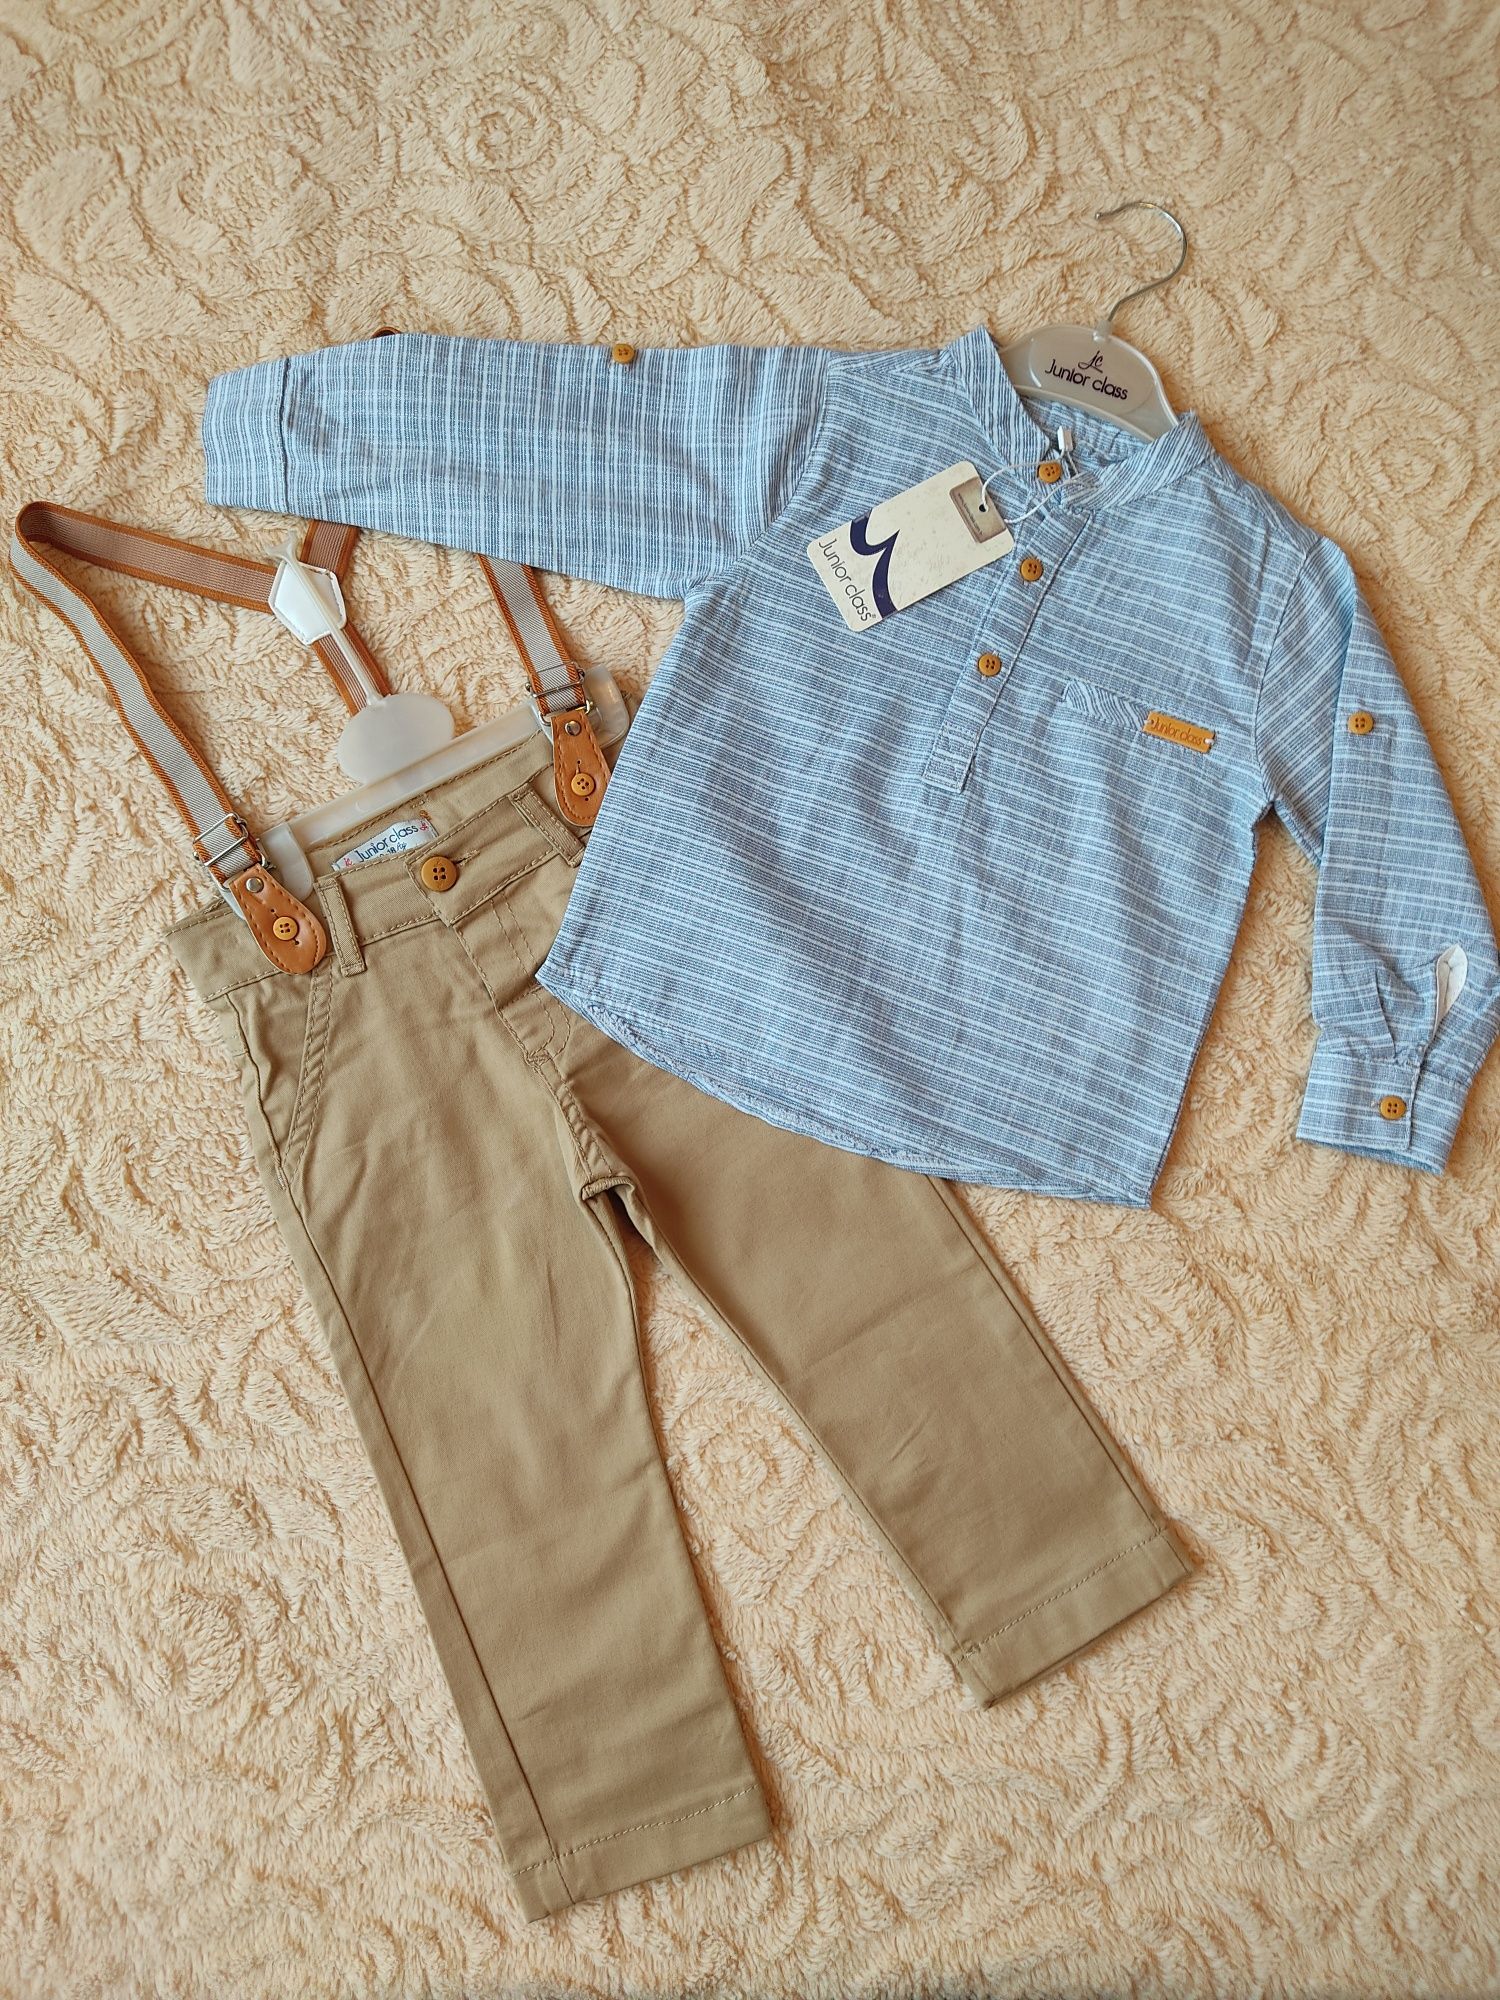 Куртки и костюмы (брюки+рубашка) на мальчика